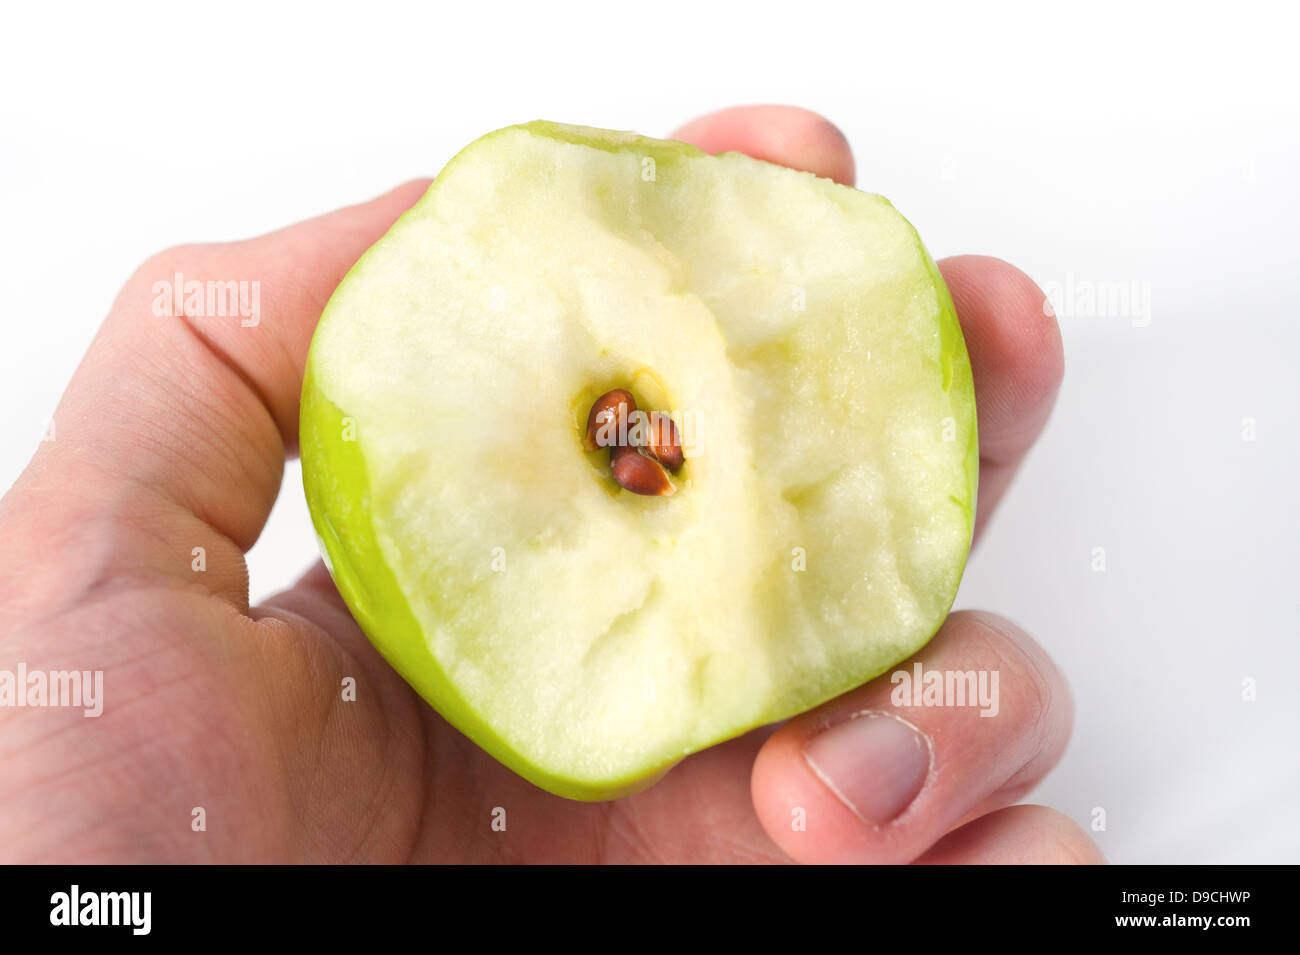 Hält einen halb gegessen grünen Apfel zeigt den Kern und Samen Stockfoto